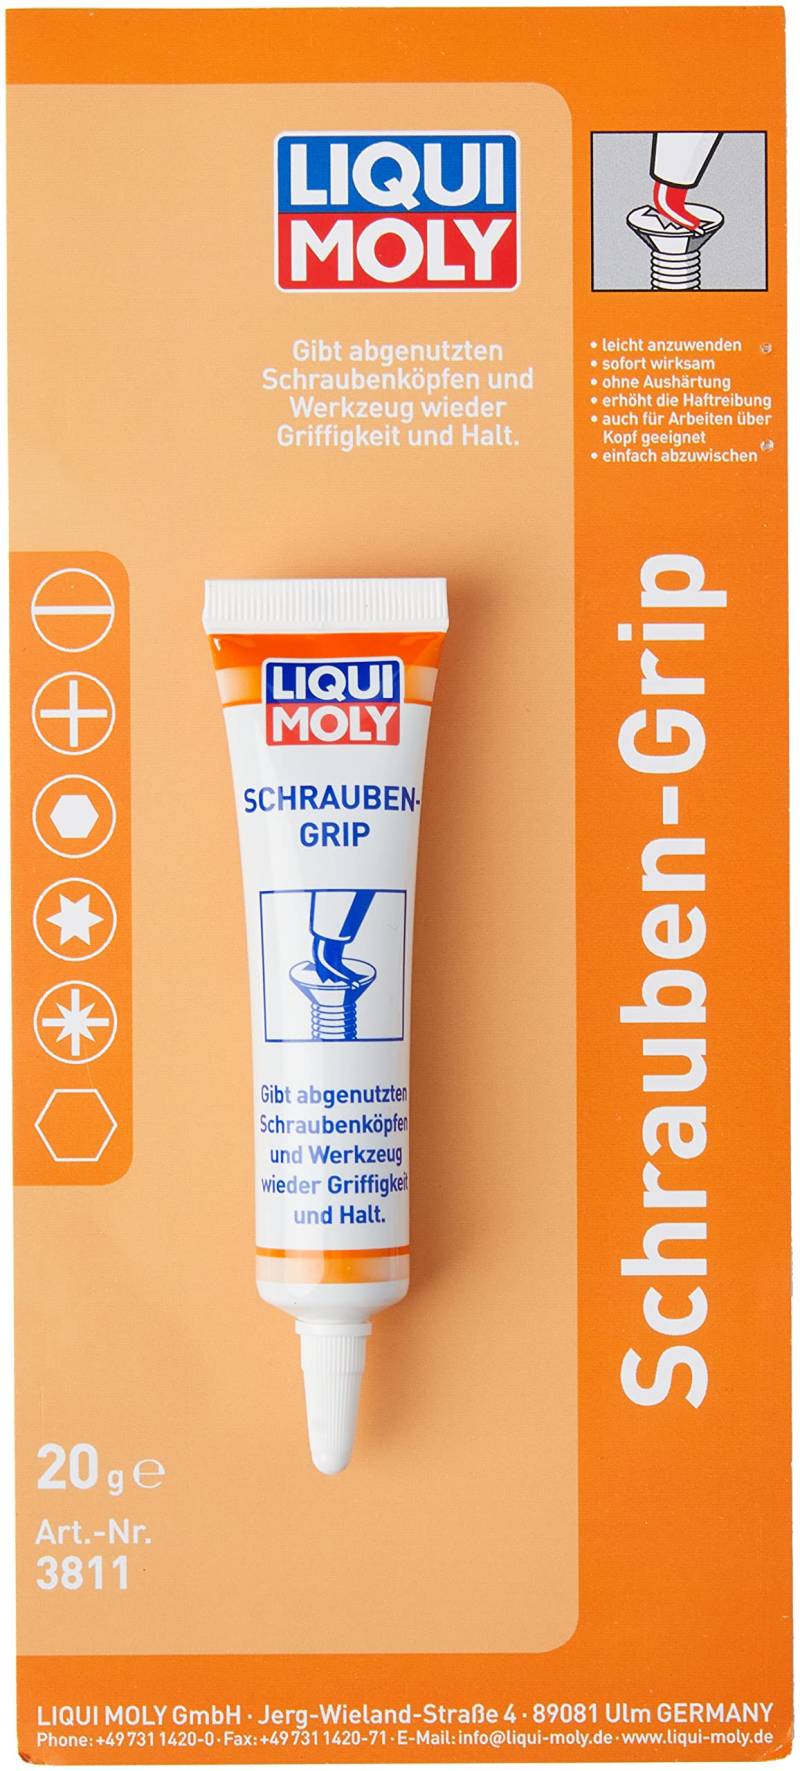 LIQUI MOLY Schrauben-Grip | 20 g | Schraubensicherung | Art.-Nr.: 3811 von Liqui Moly